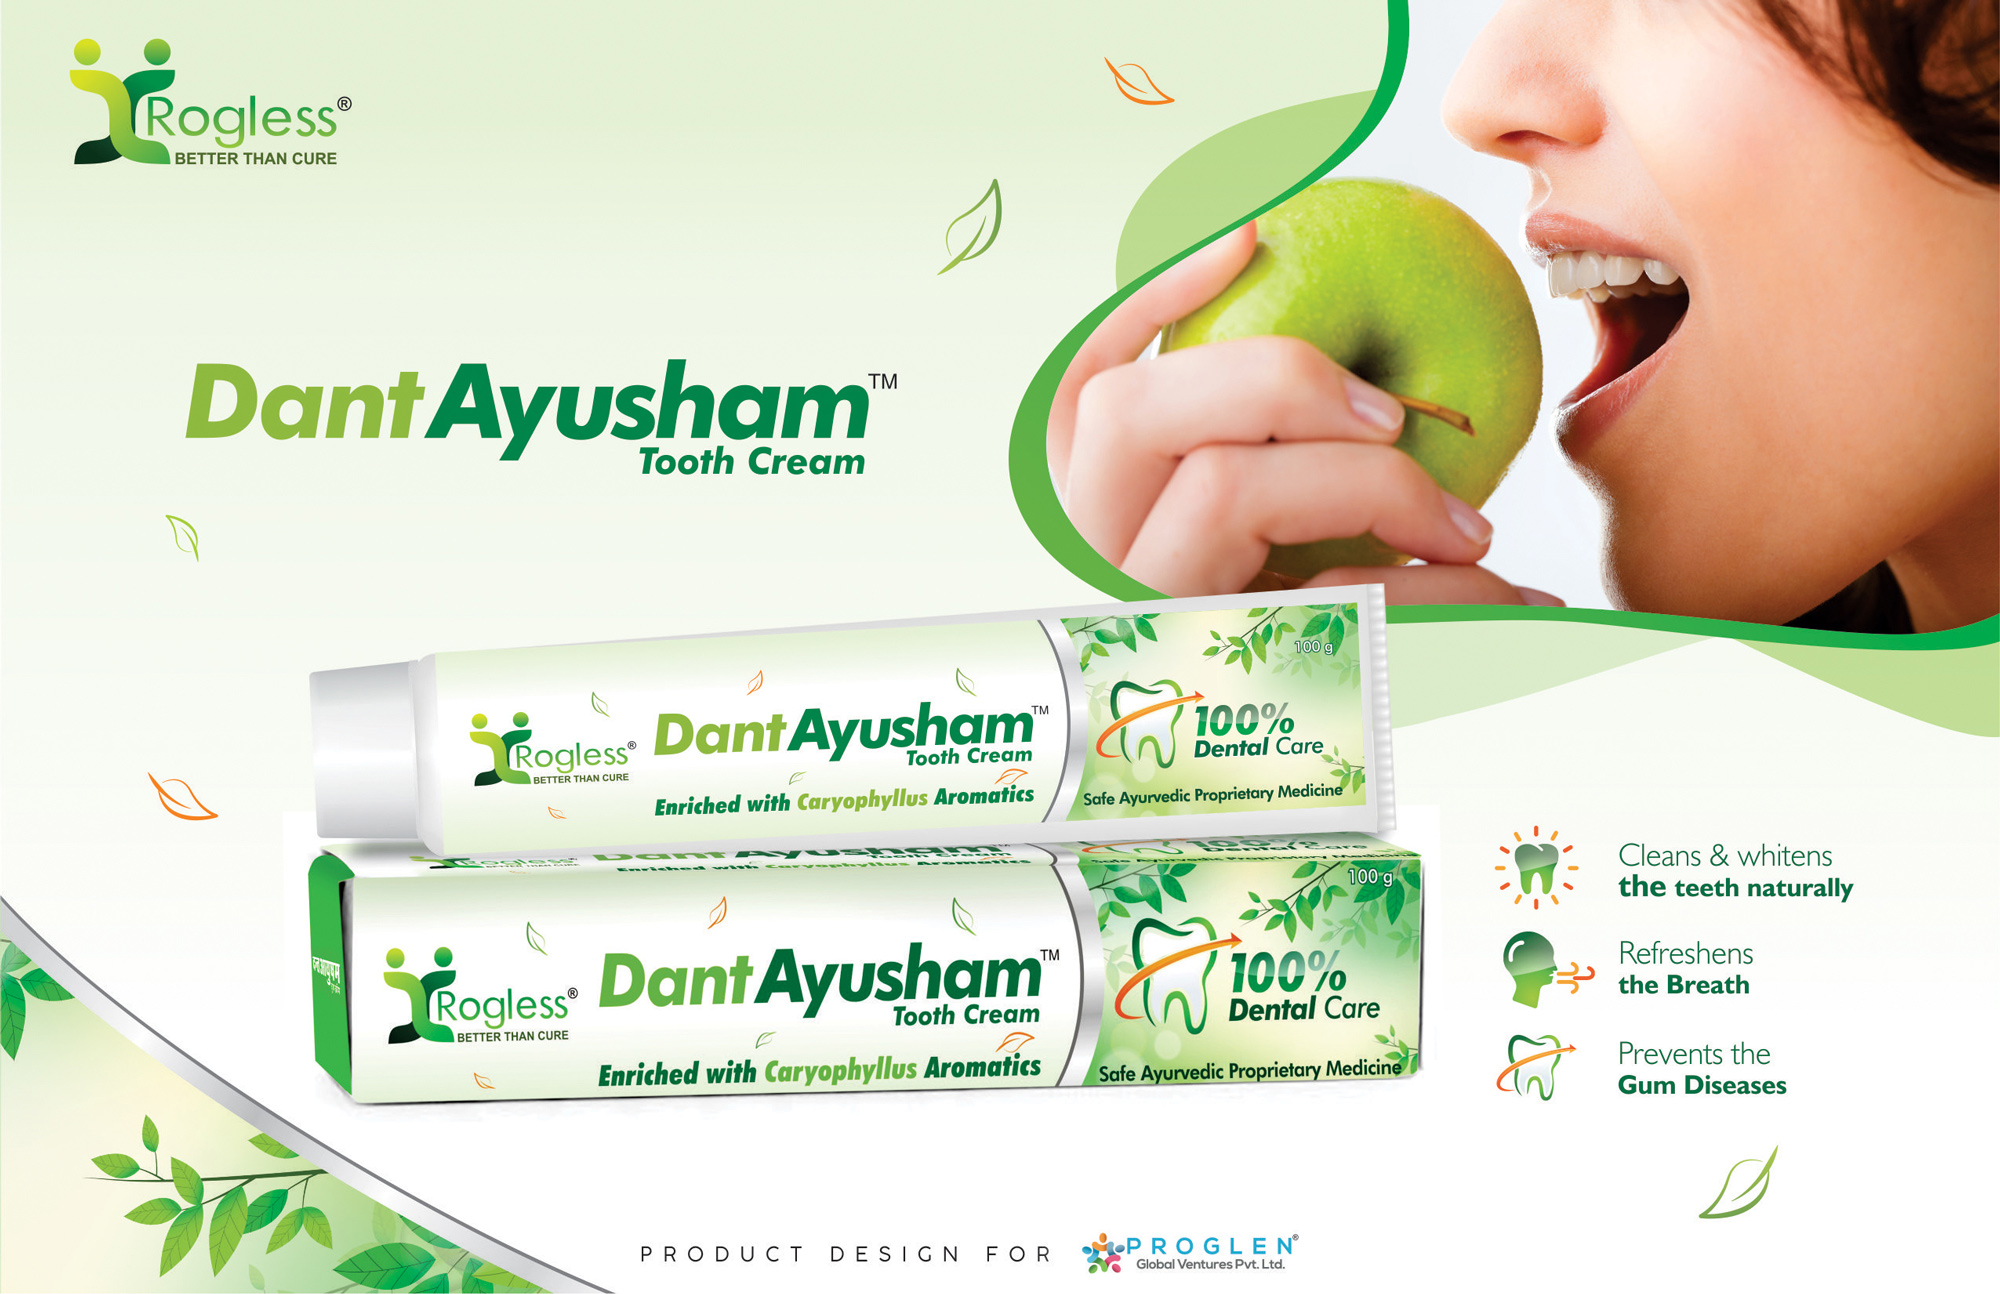 Rogless Dant Ayusham Herbal Toothpaste